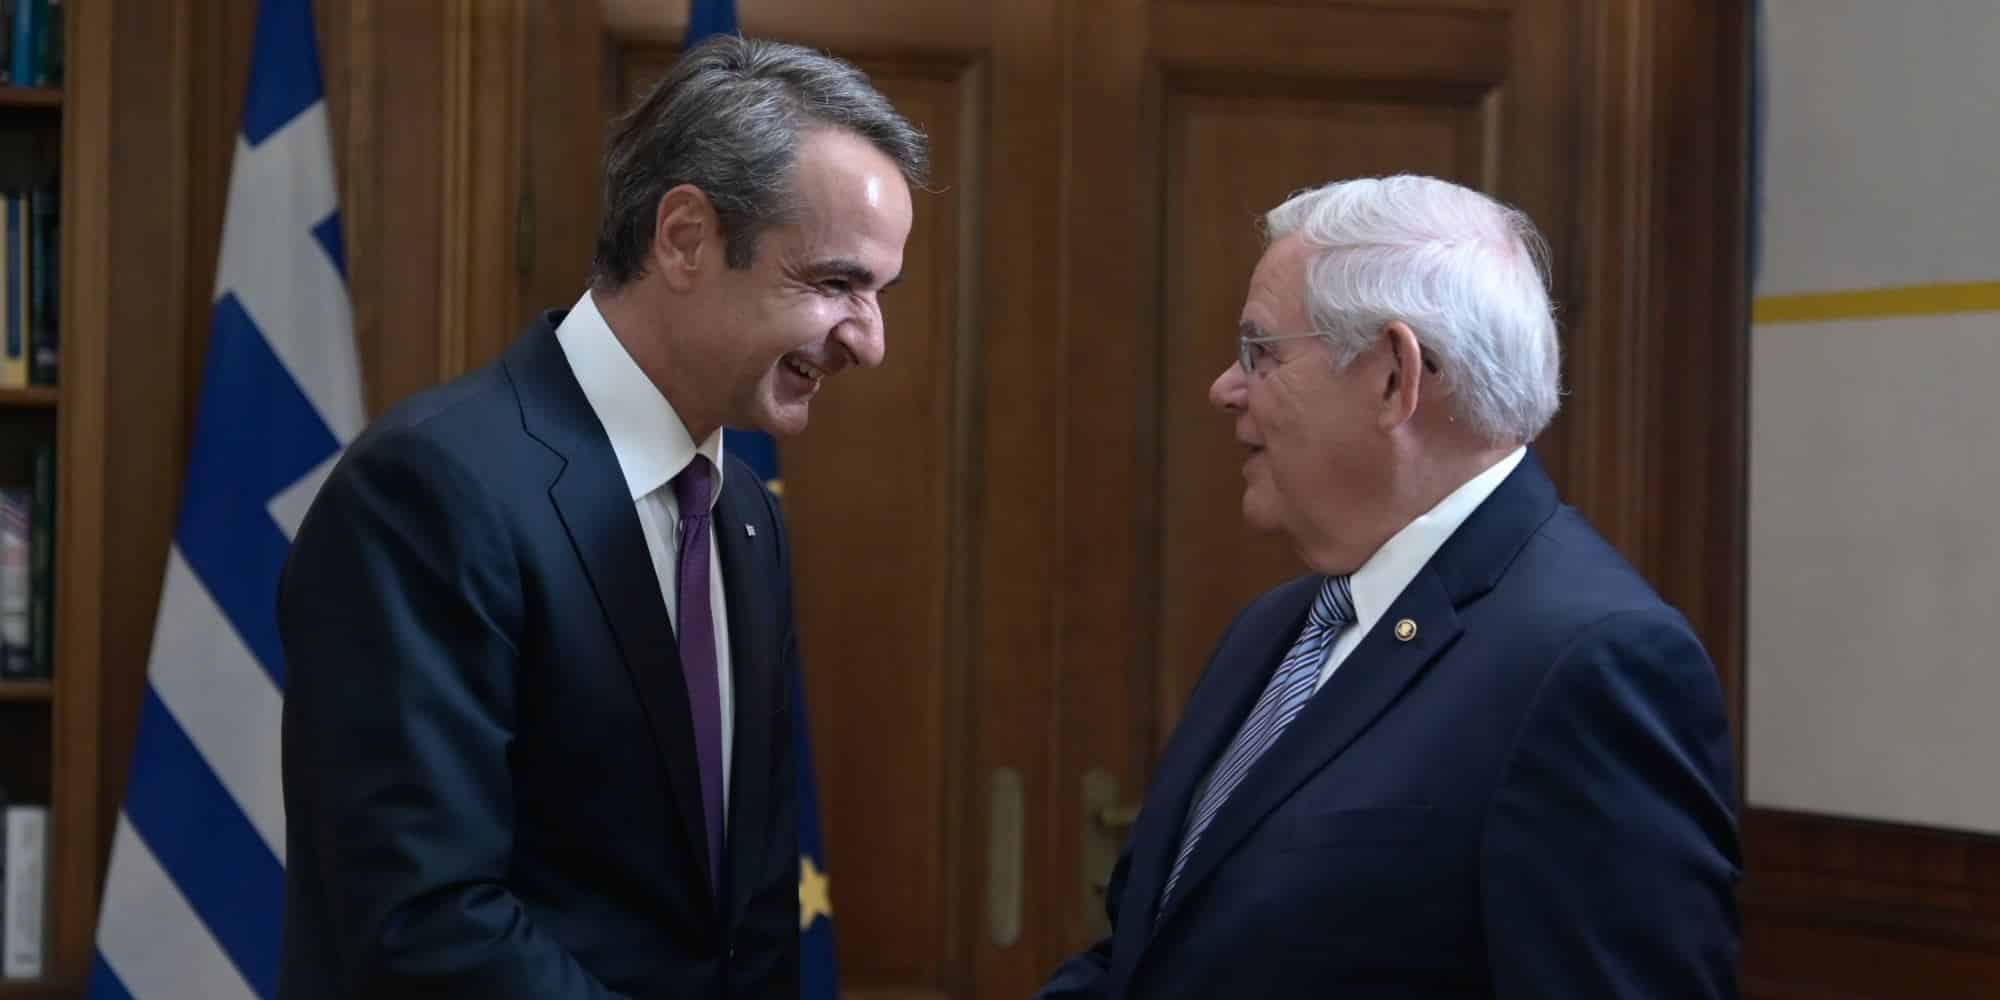 Ο πρωθυπουργός Κυριάκος Μητσοτάκης συναντήθηκε στο Μέγαρο Μαξίμου, με τον Πρόεδρο της Επιτροπής Εξωτερικών Σχέσεων της Γερουσίας των ΗΠΑ, Ρόμπερτ Μενέντεζ